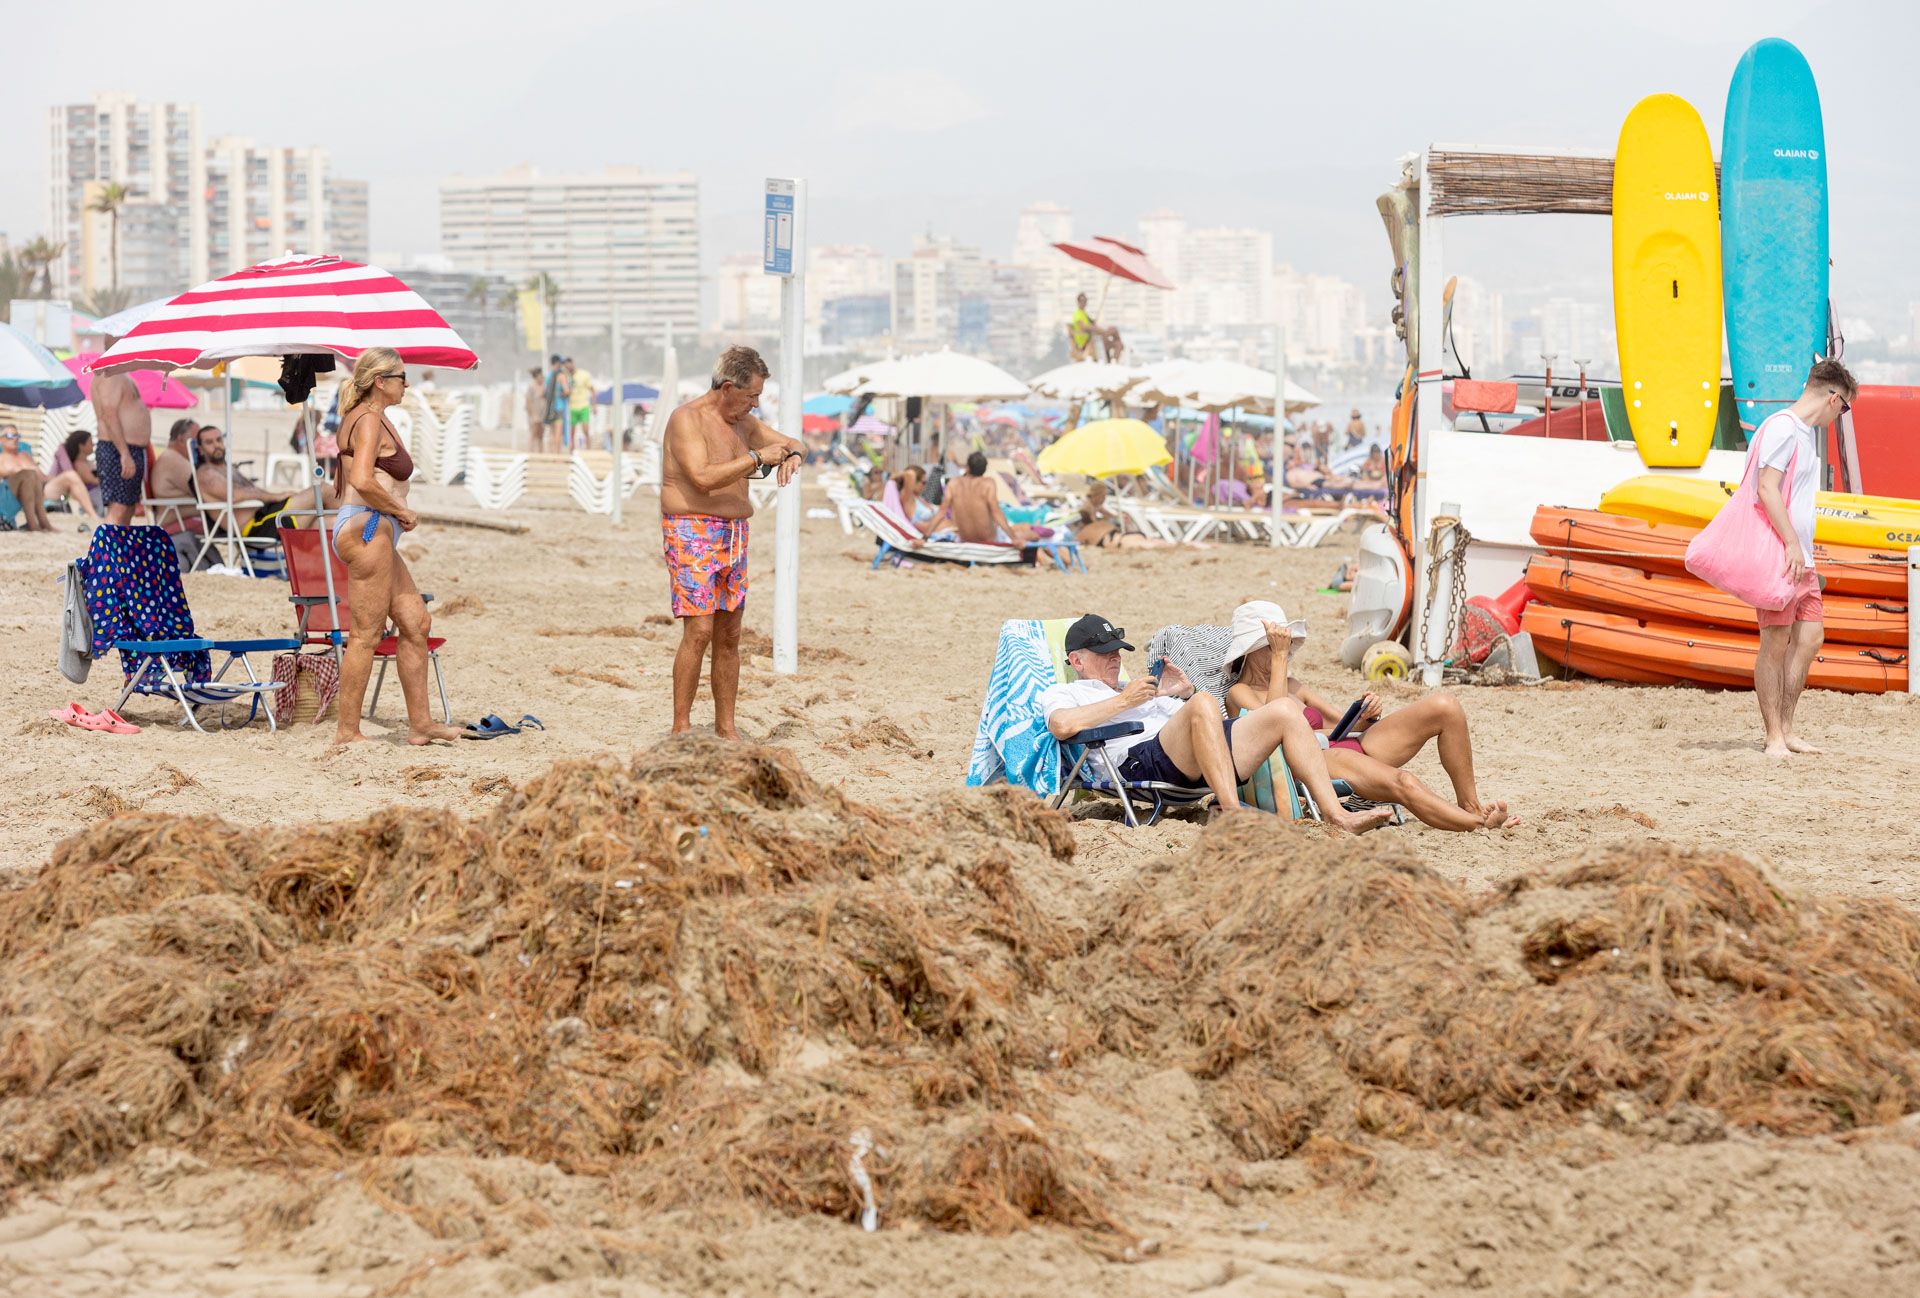 Los efectos del temporal continuan siendo visibles en Playa de San Juan